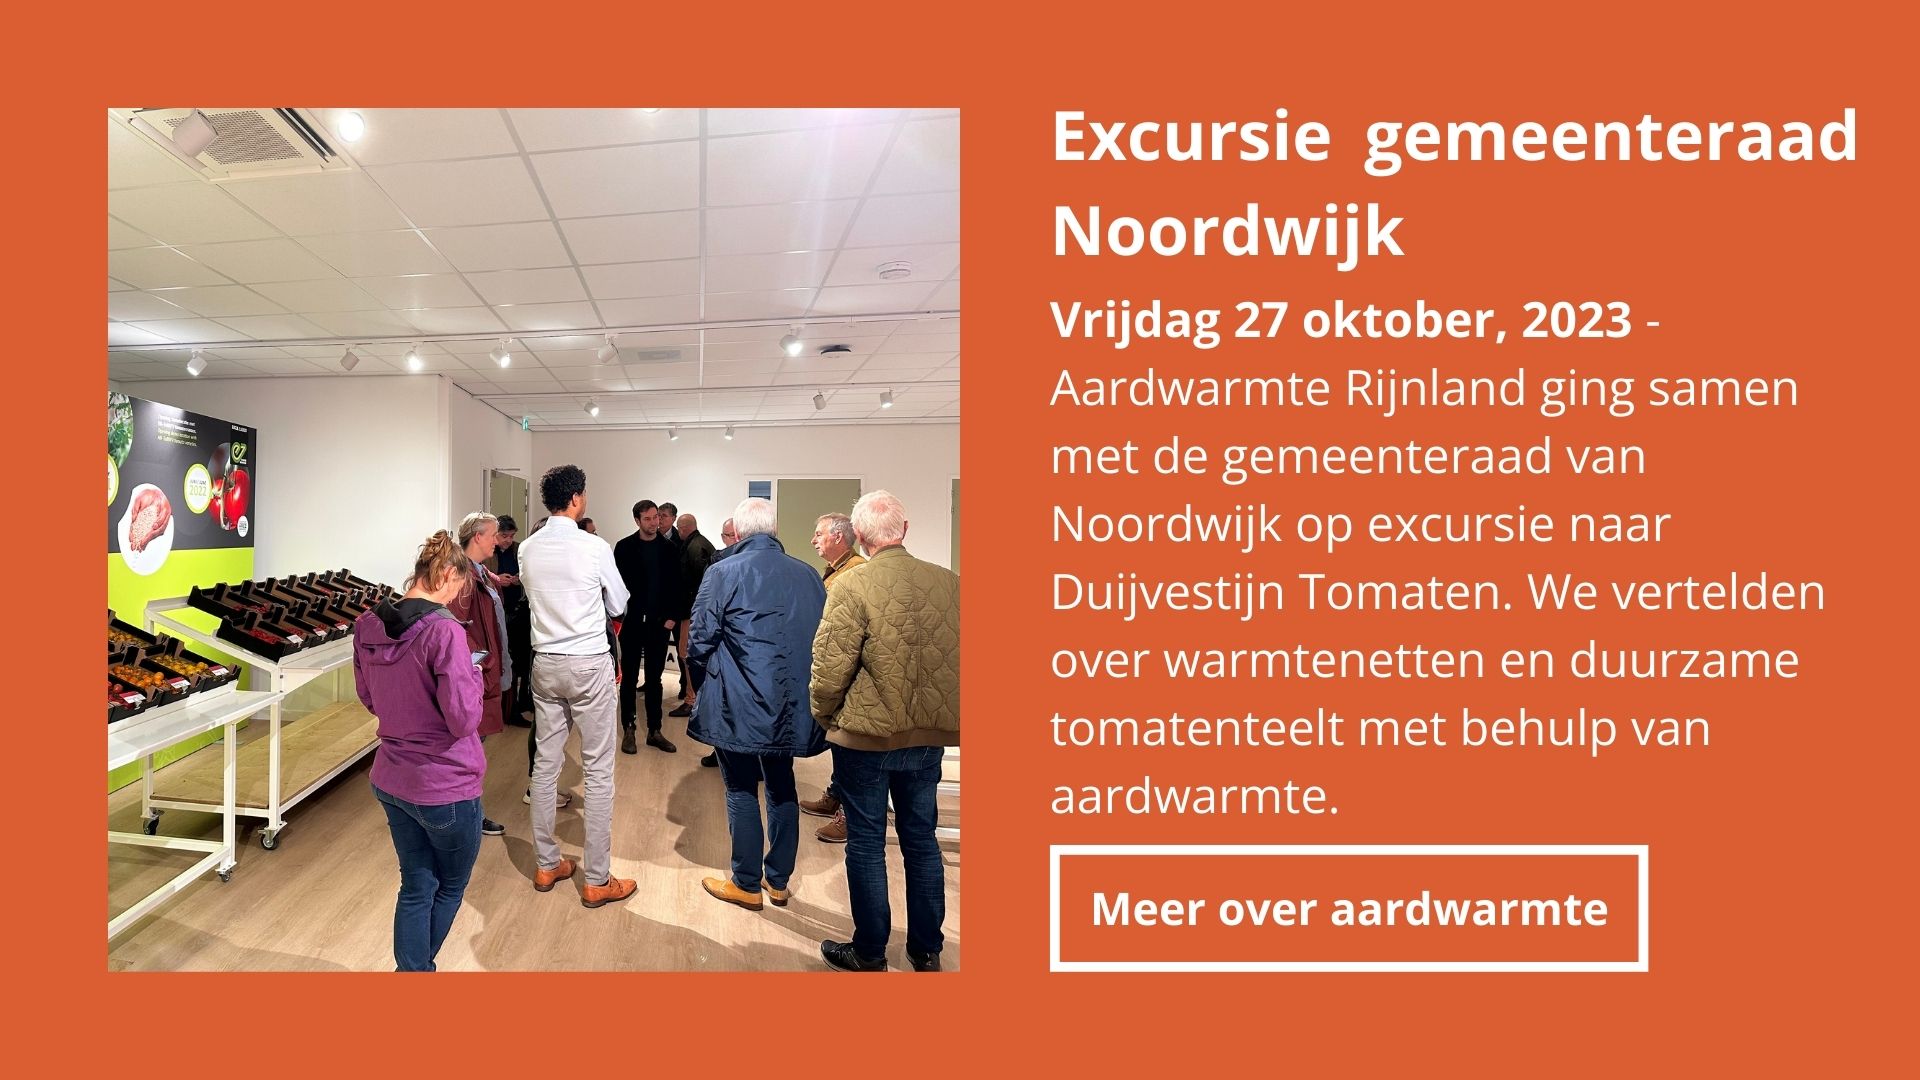 Excursie gemeenteraad Noordwijk nieuwsbrief februari